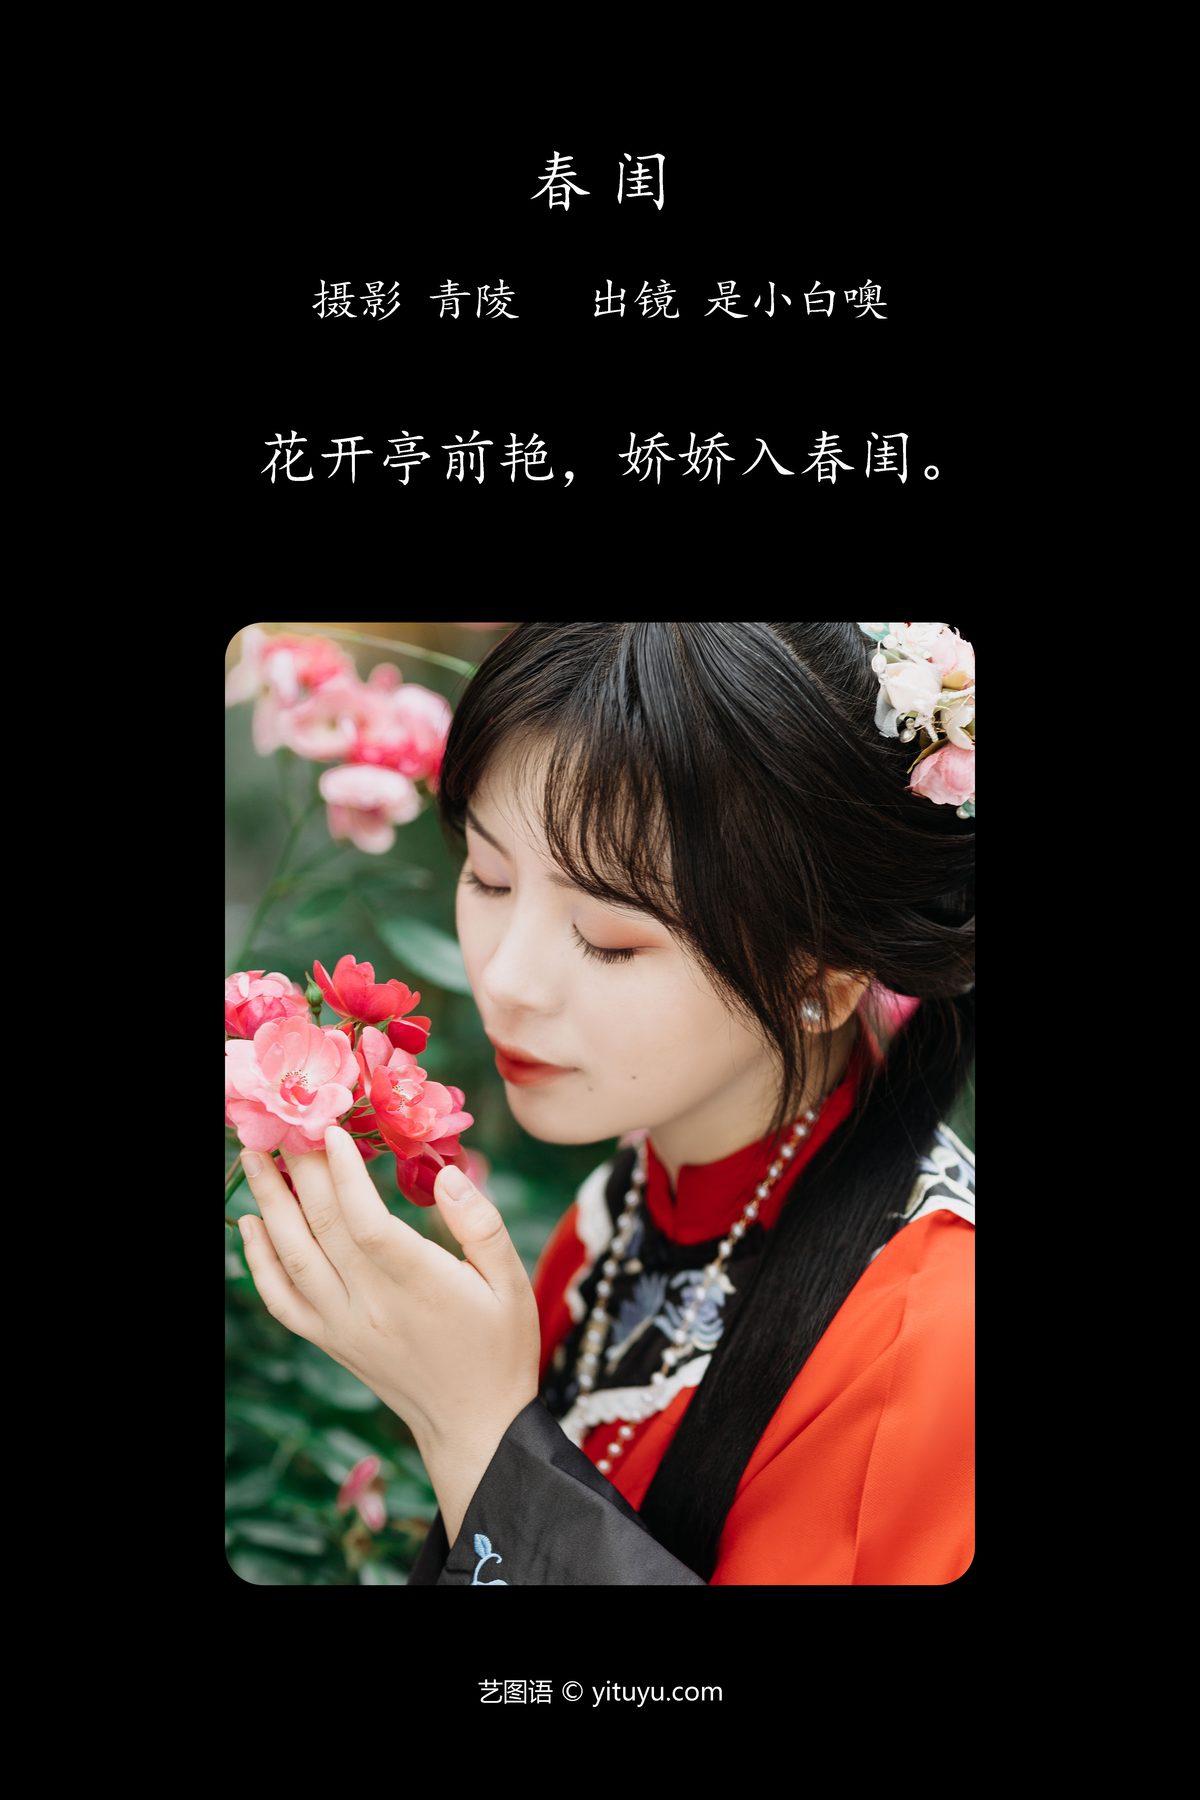 YiTuYu艺图语 Vol 4557 Shi Xiao Bai O 0001 8260976577.jpg